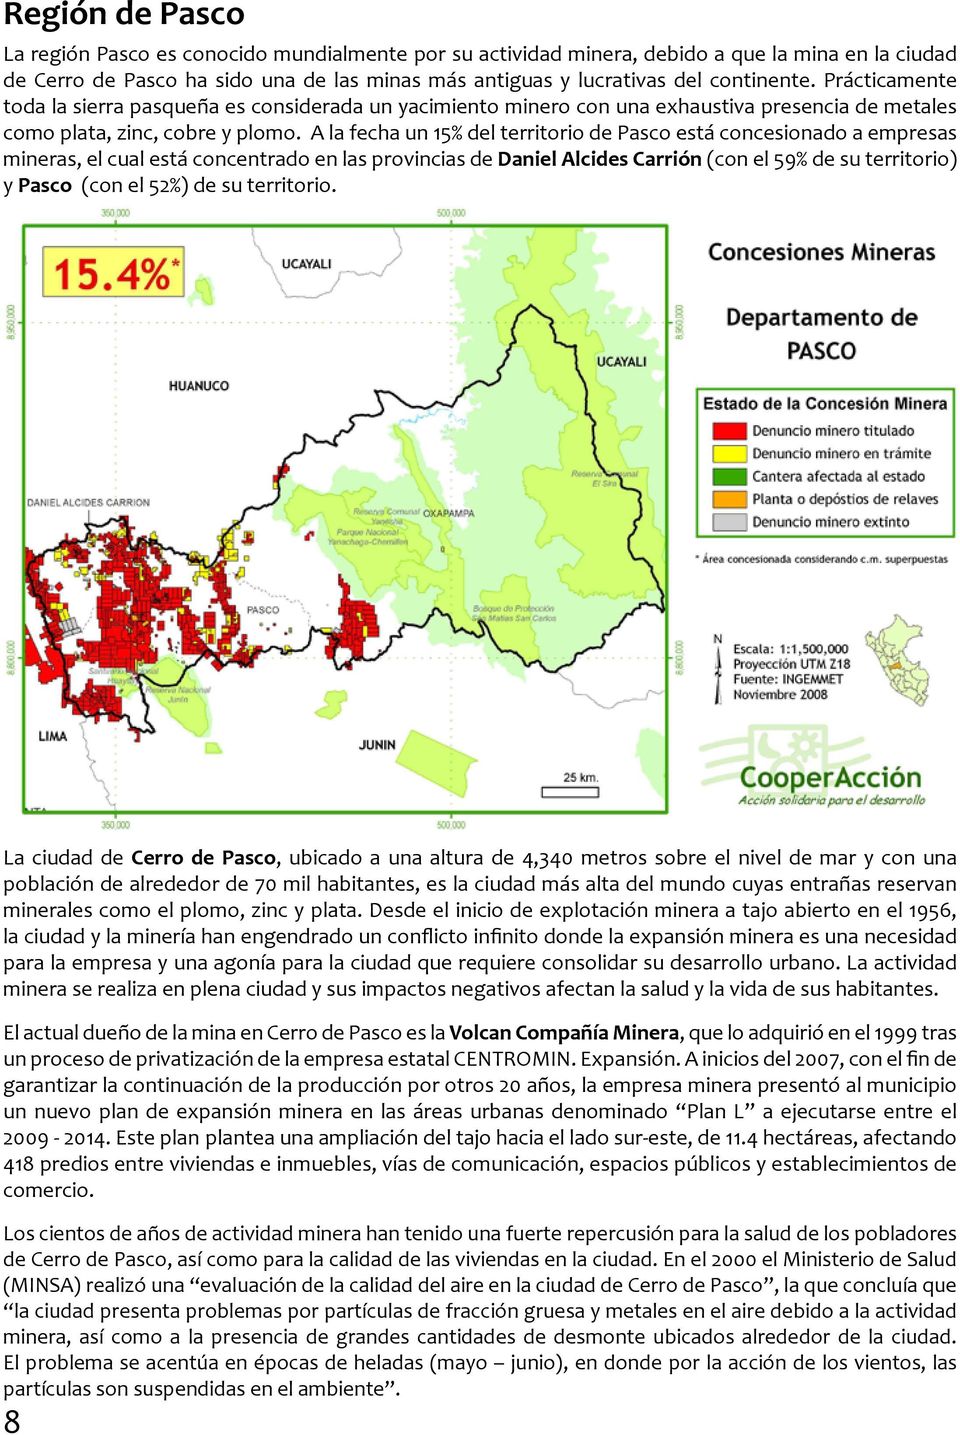 A la fecha un 15% del territorio de Pasco está concesionado a empresas mineras, el cual está concentrado en las provincias de Daniel Alcides Carrión (con el 59% de su territorio) y Pasco (con el 52%)